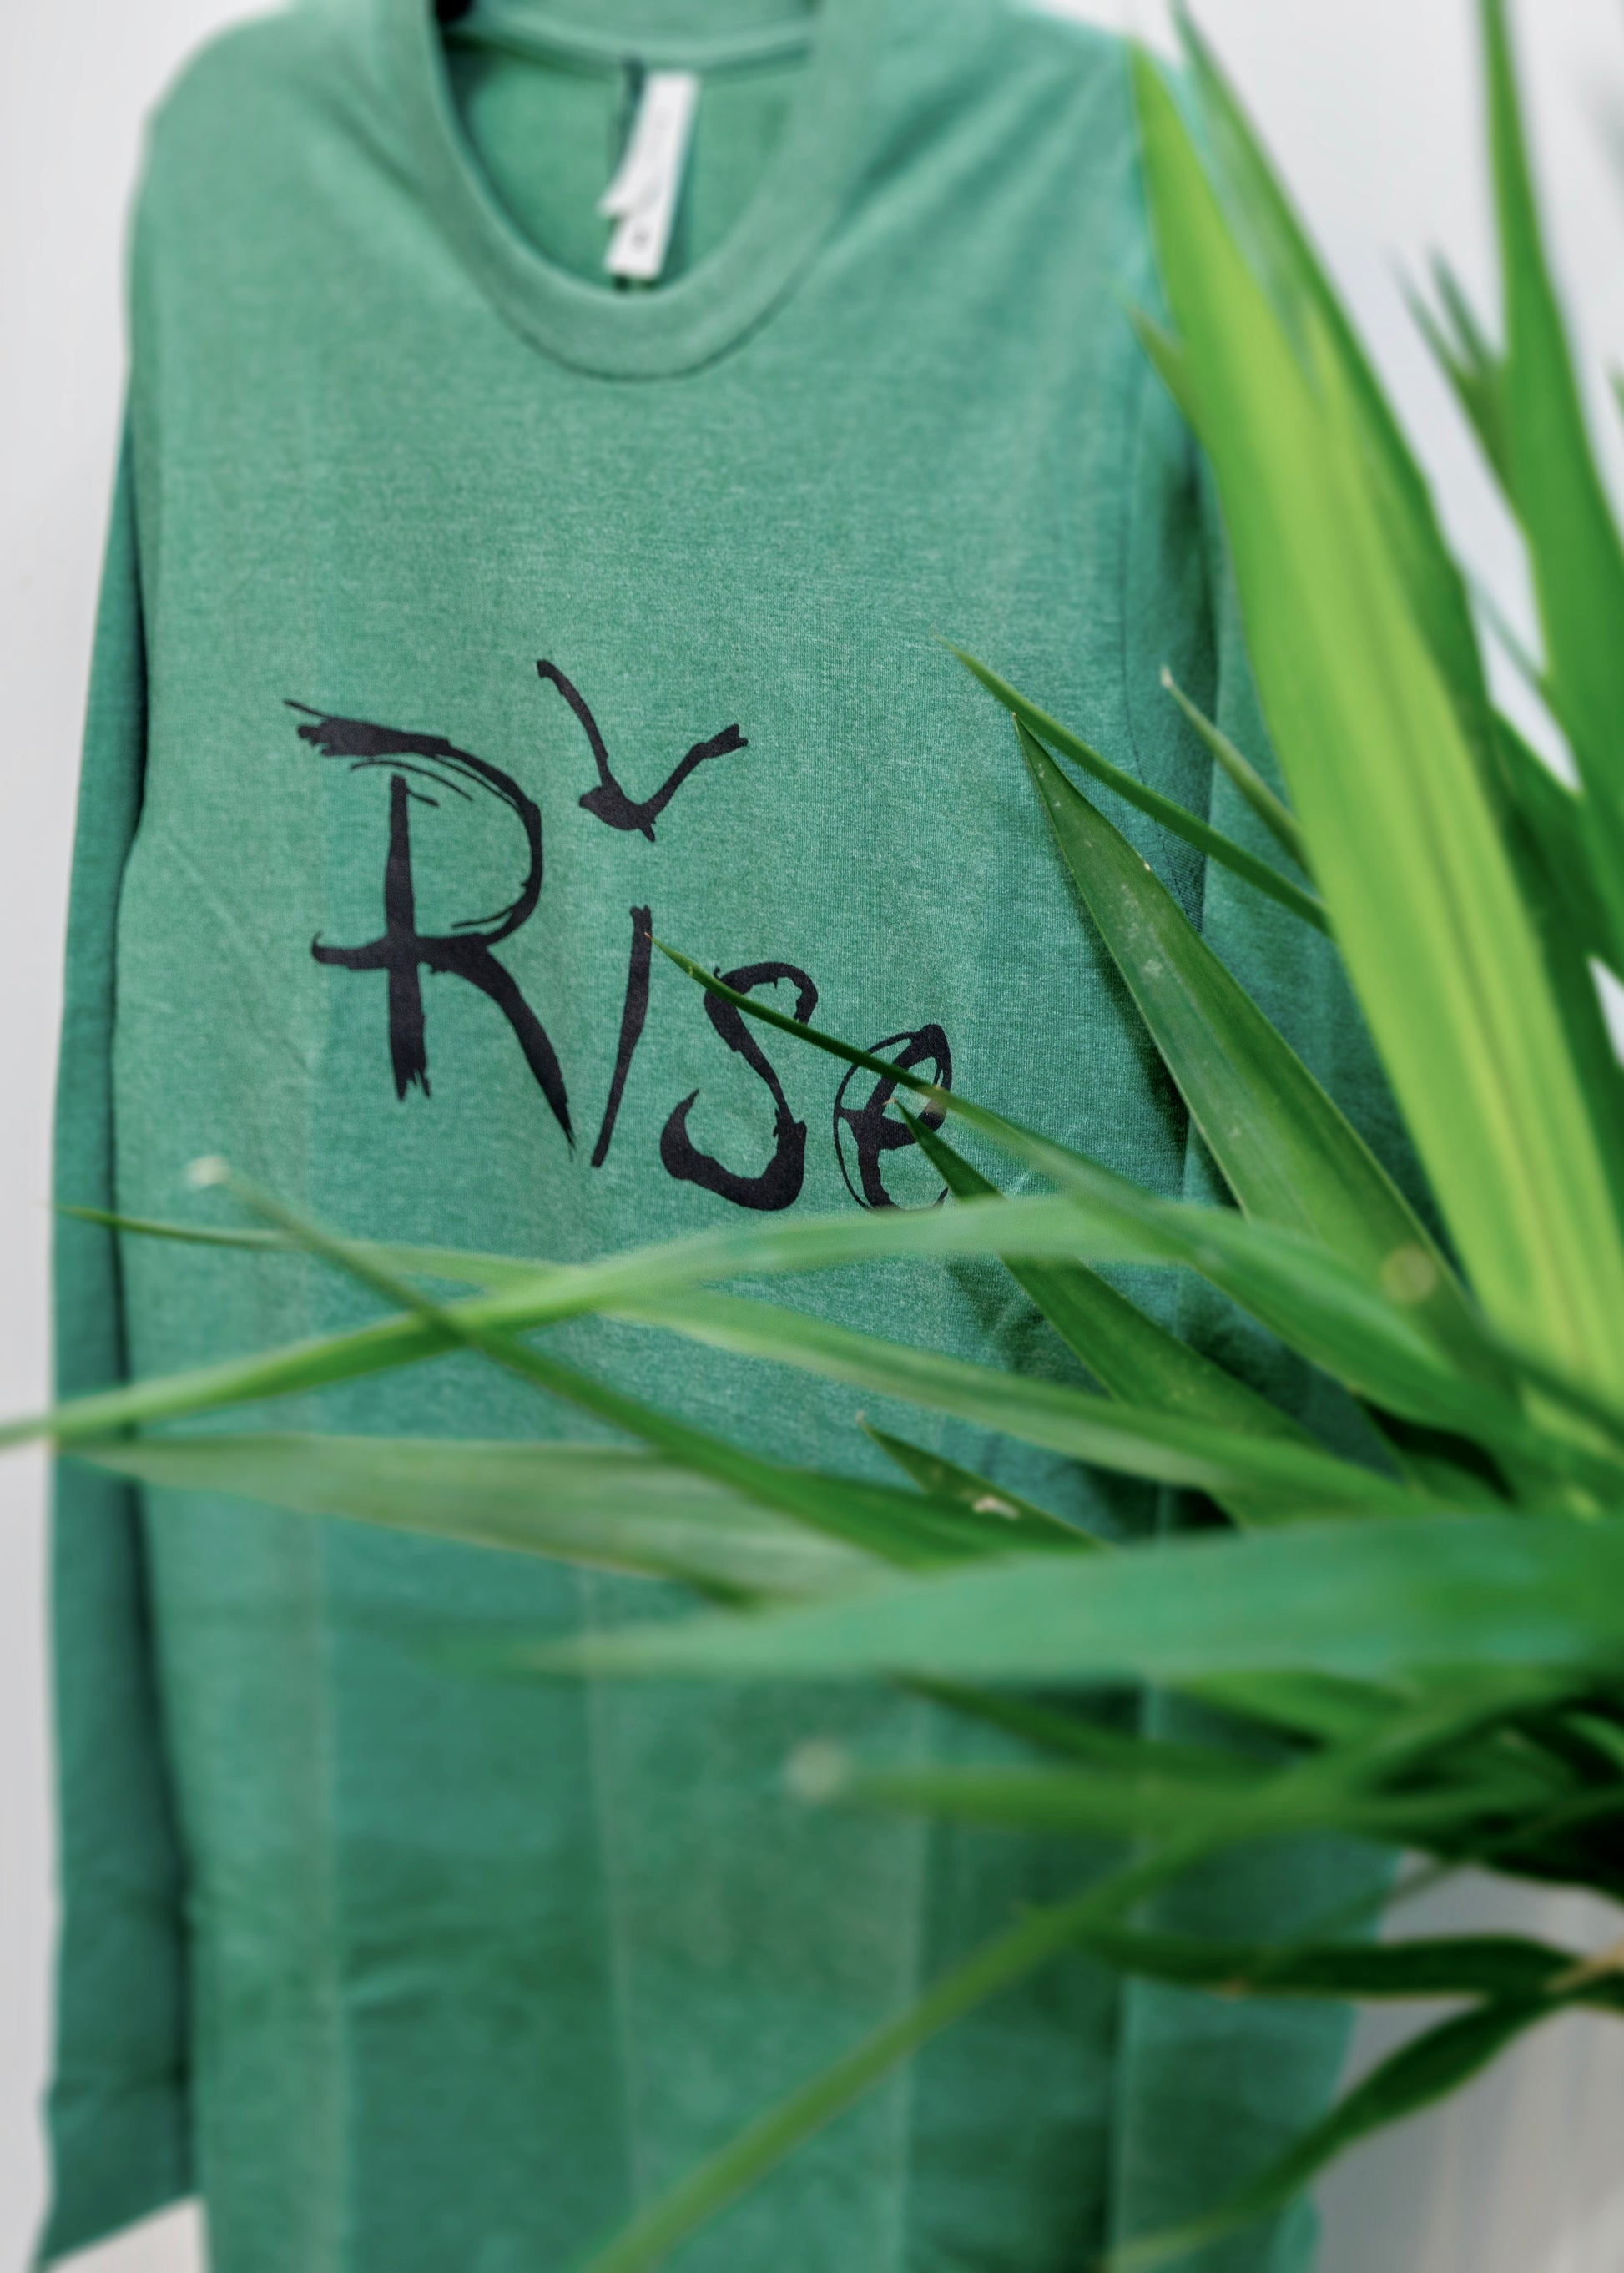 Rise Large Print on Olive Long Sleeve Shirt